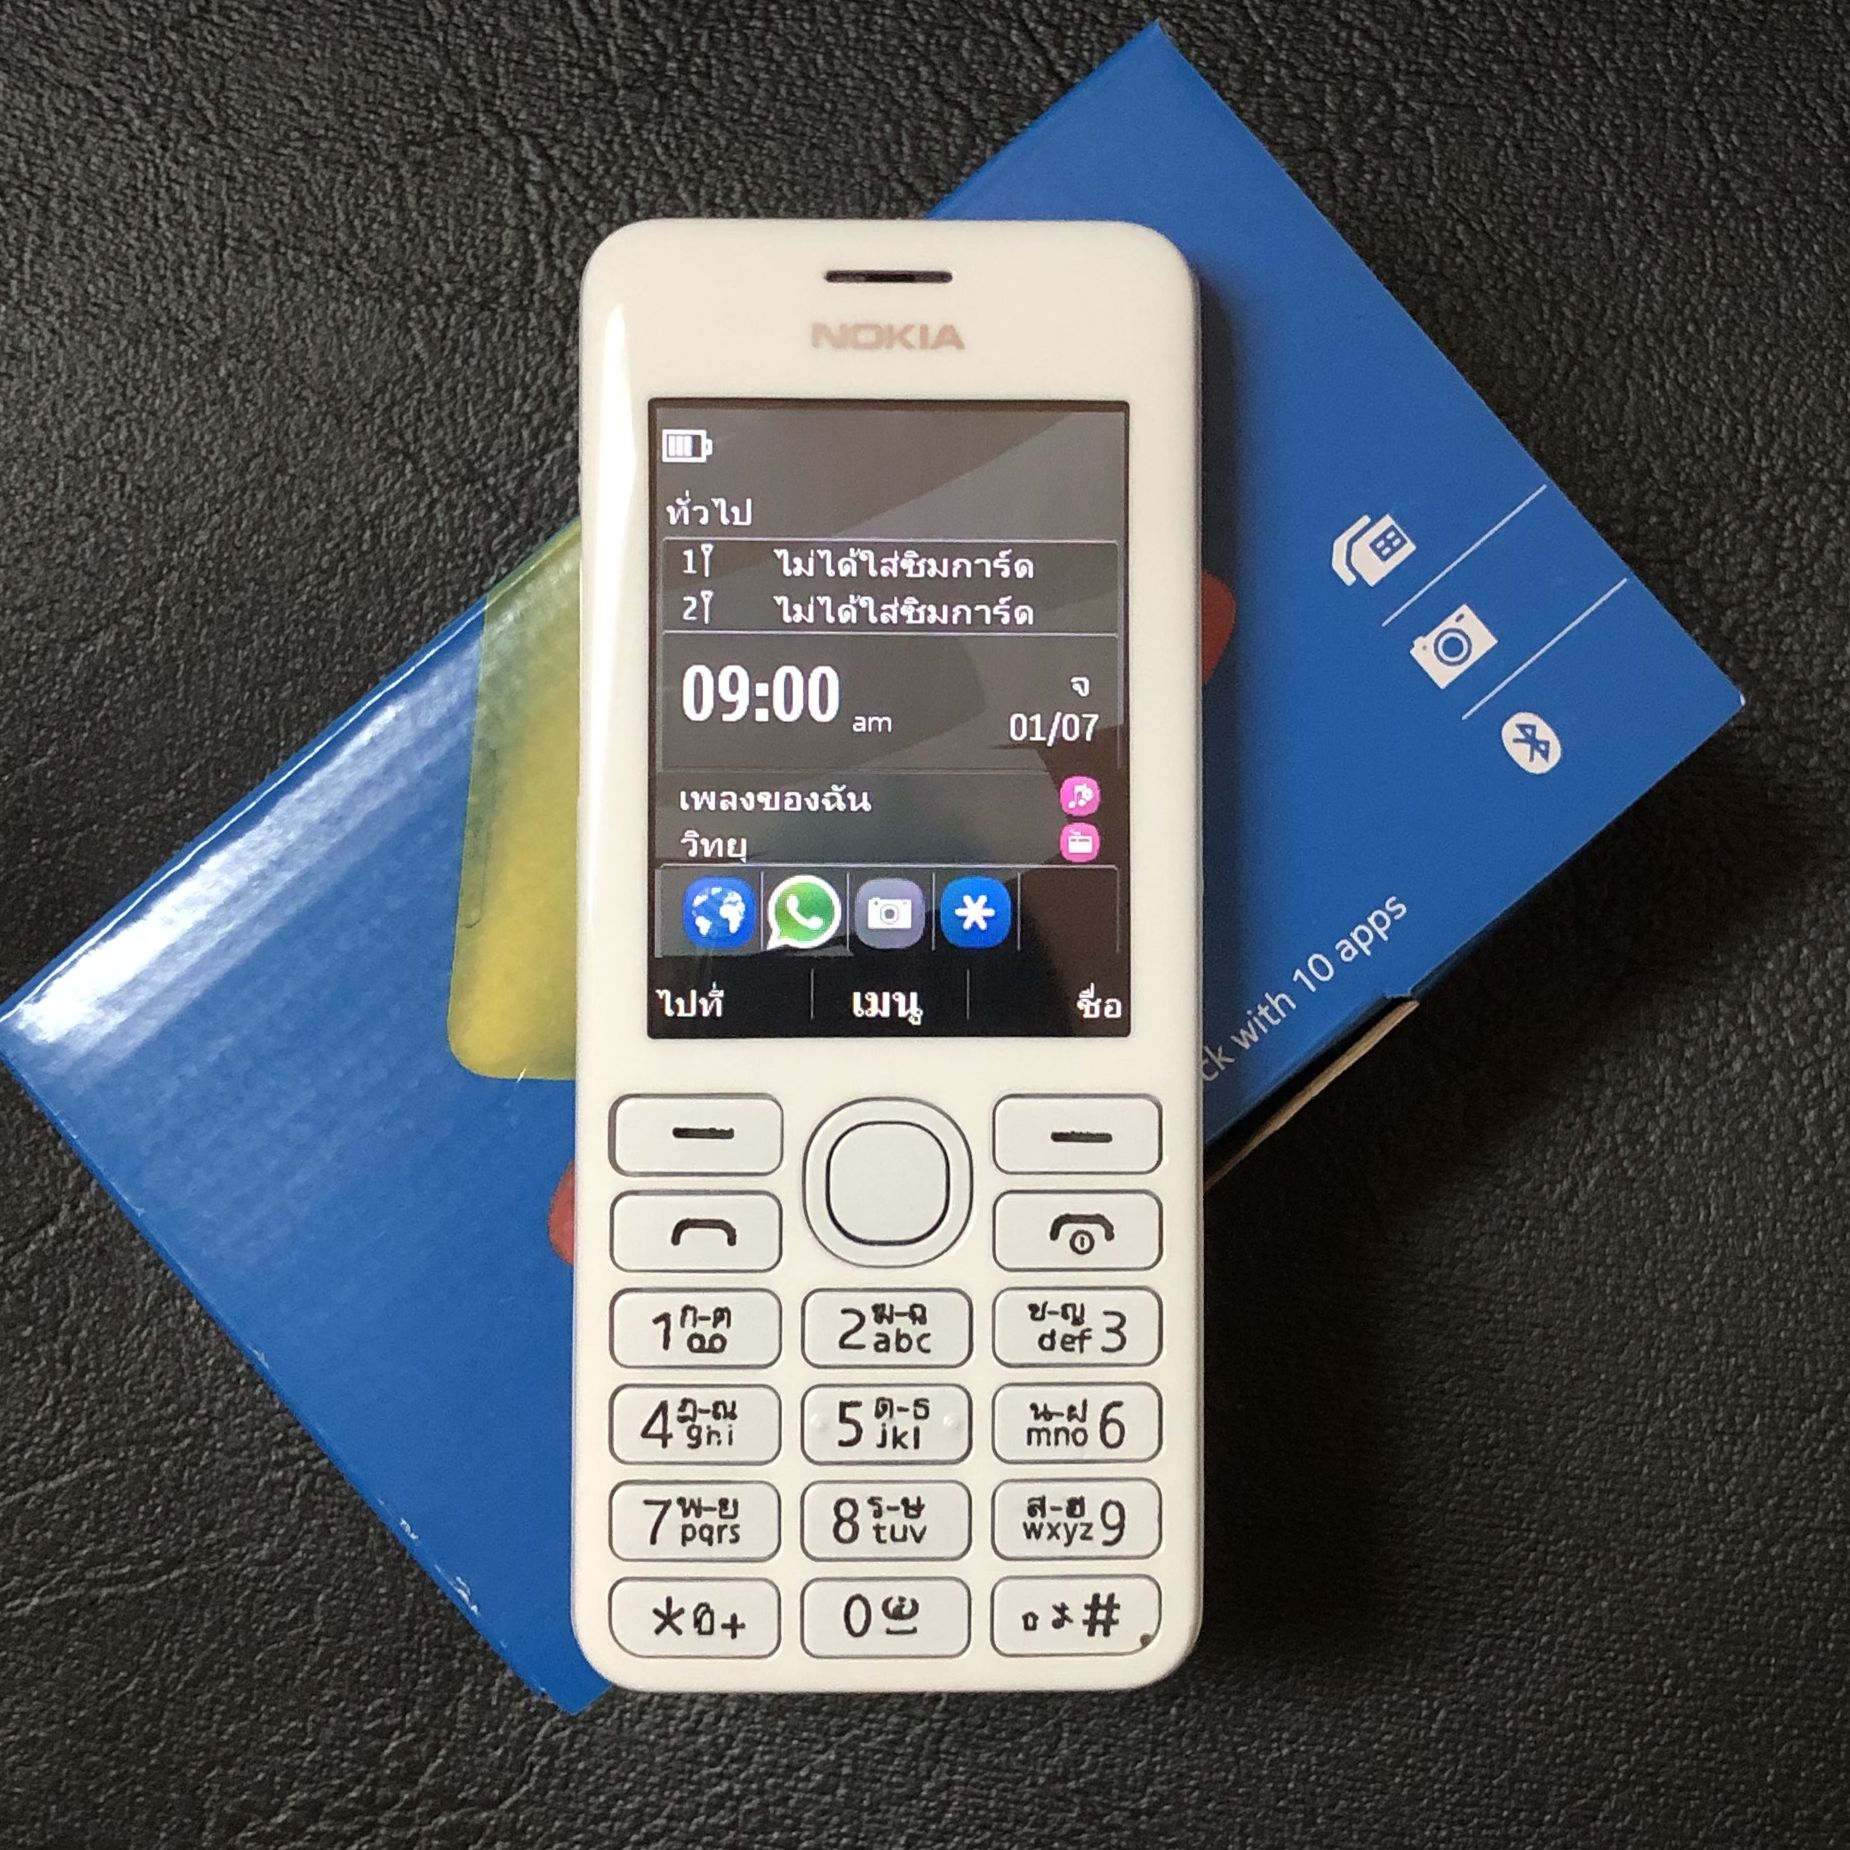 Nokia 206 โทรศัพท์มือถือสำหรับผู้สูงอายุ สามารถใช้ซิมการ์ด AIS TRUE 4G